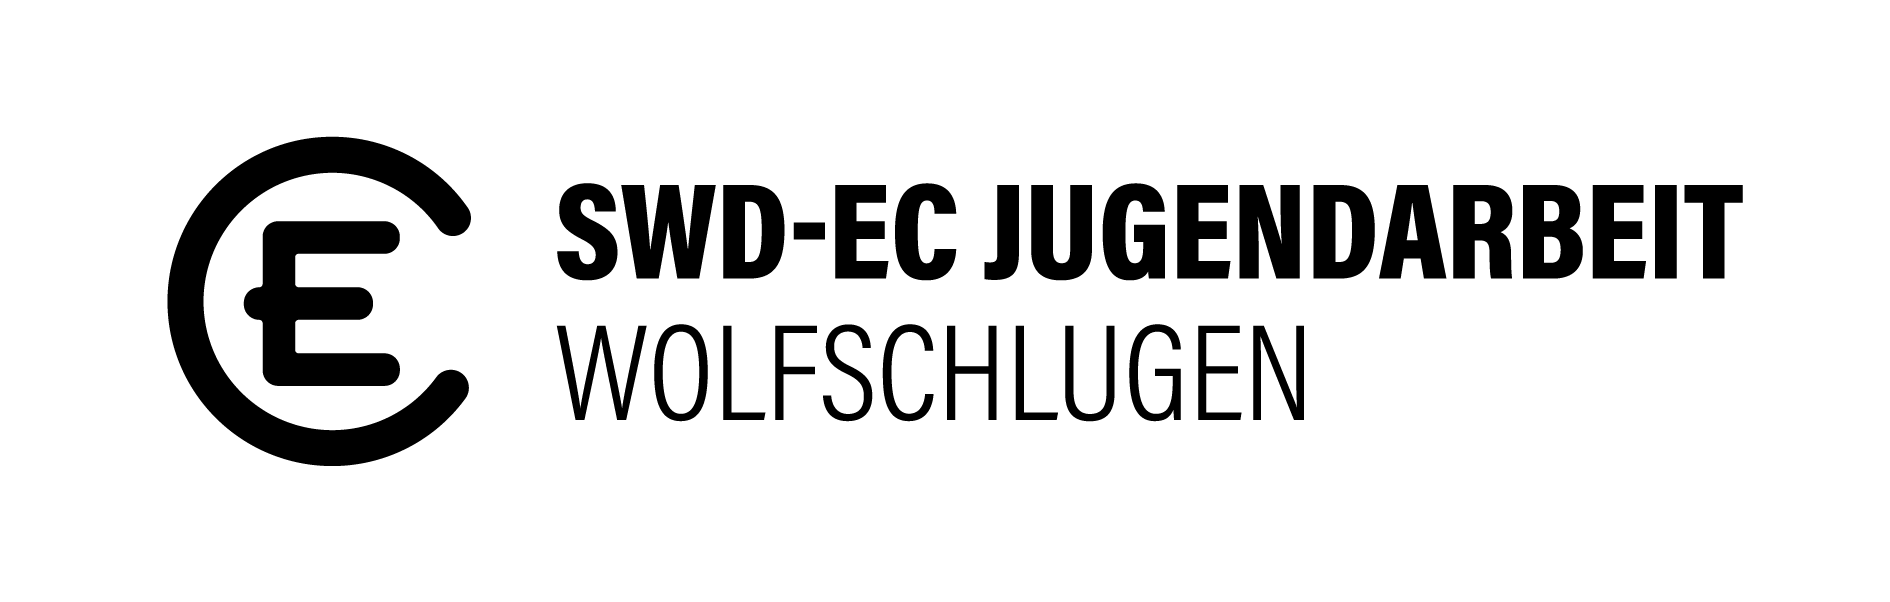 EC Wolfschlugen